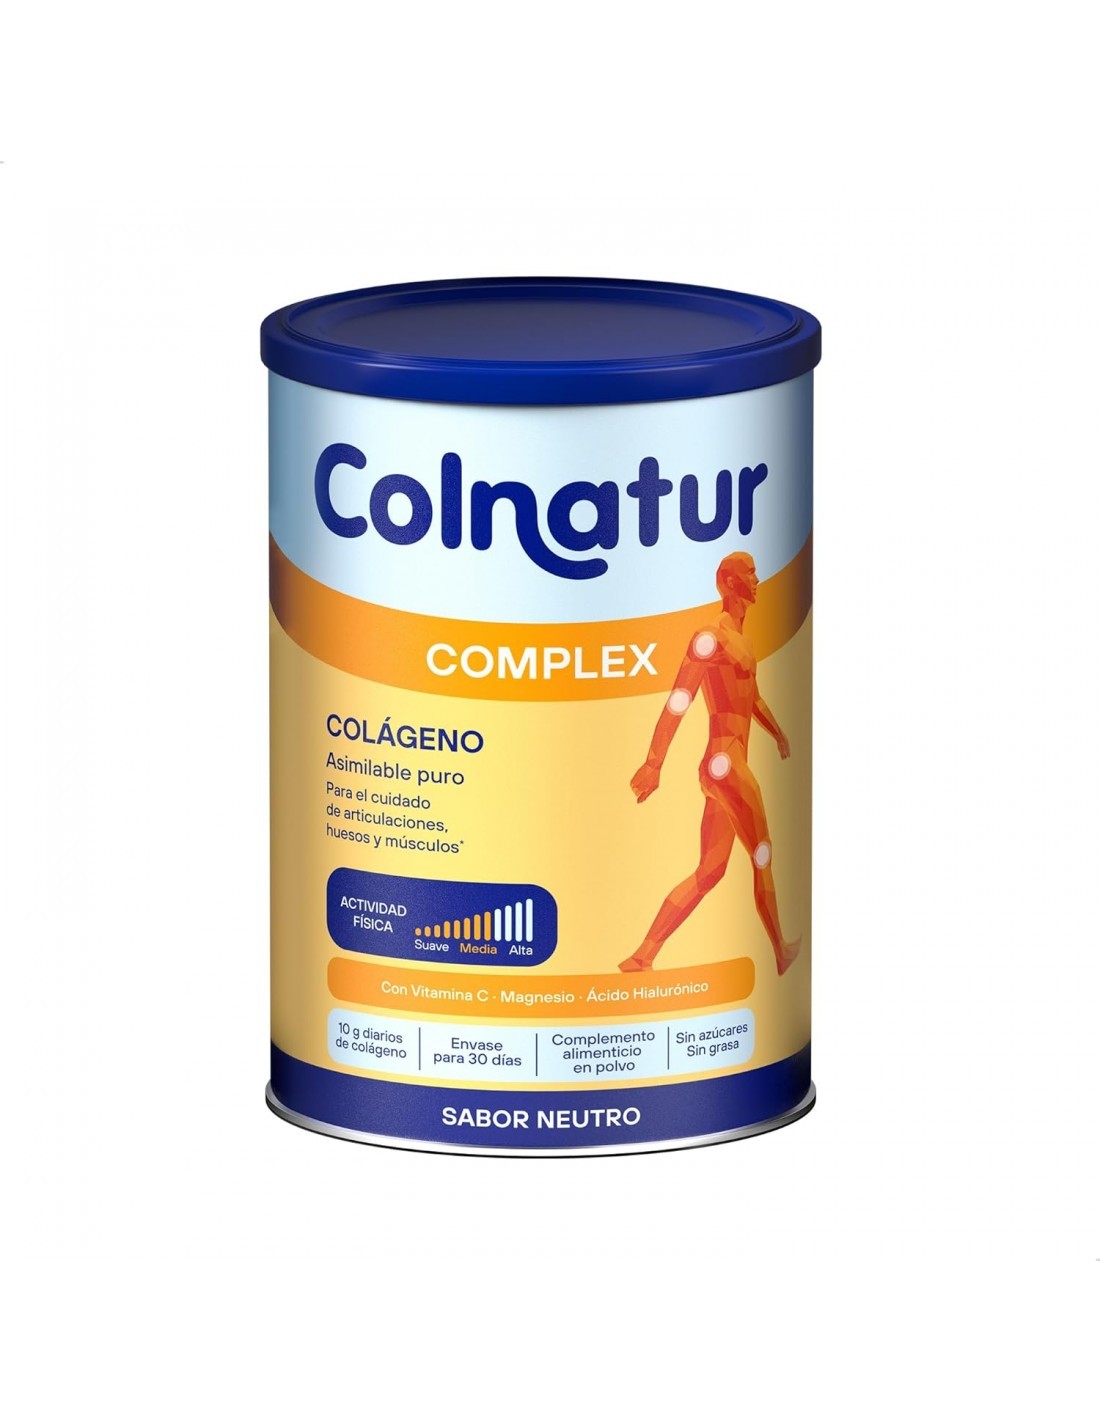 Colnatur complex sabor neutro, 330 g